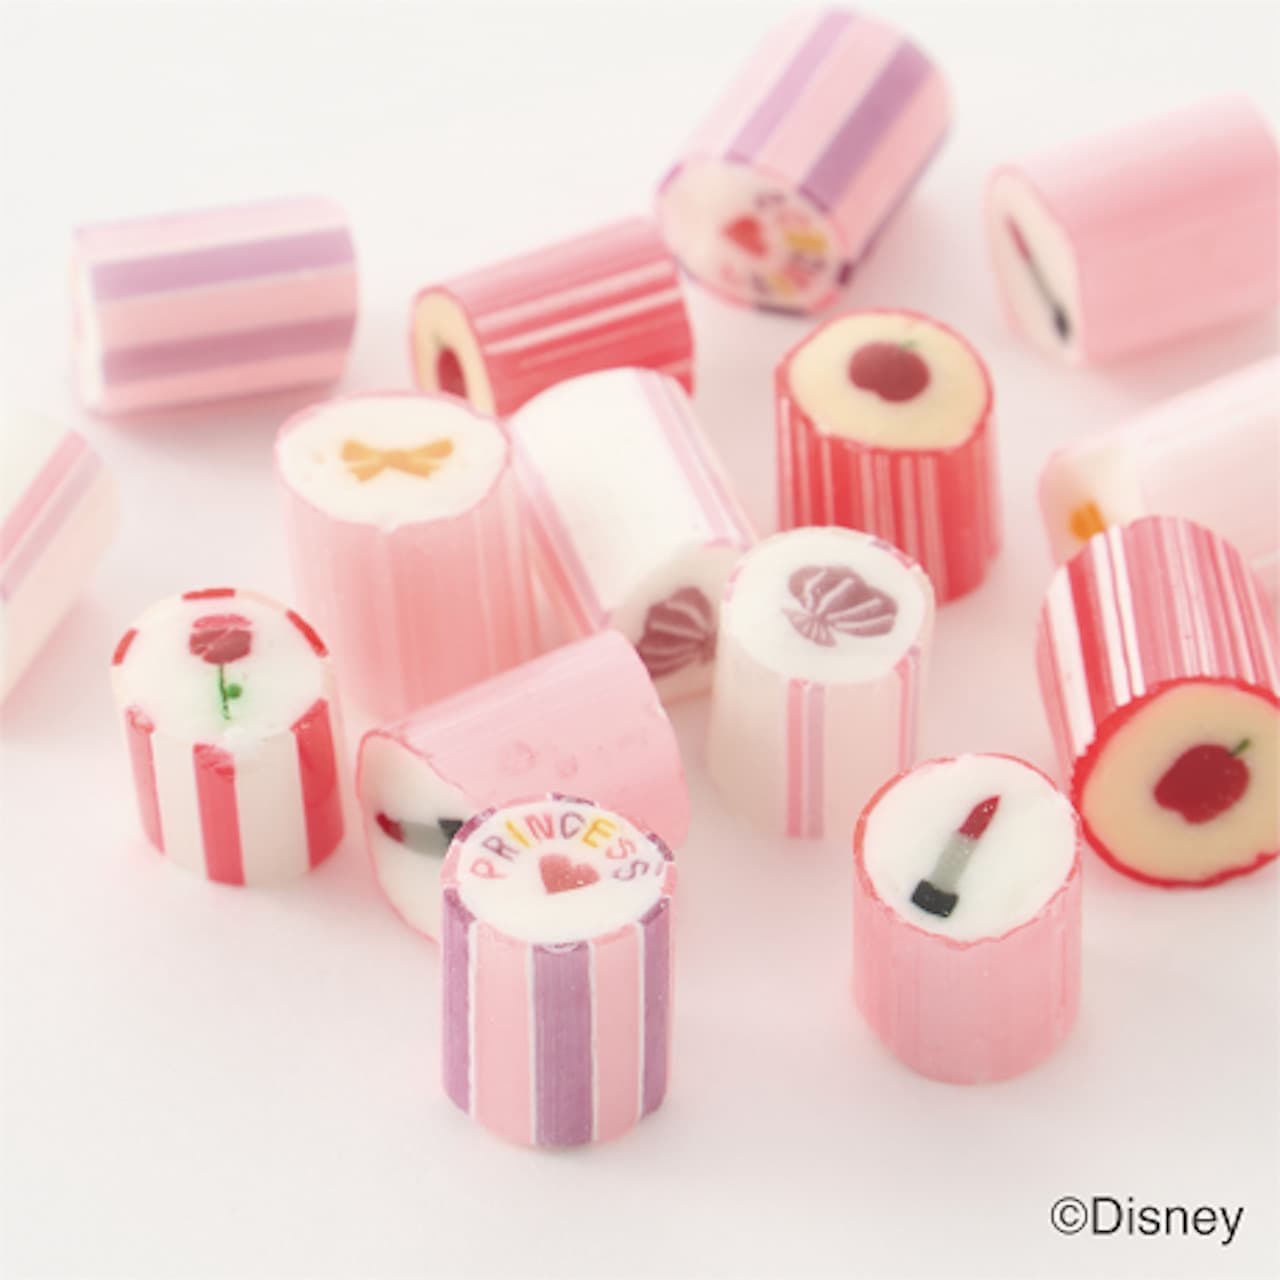 Papa Bublé "Disney Princess/Candy Mix"